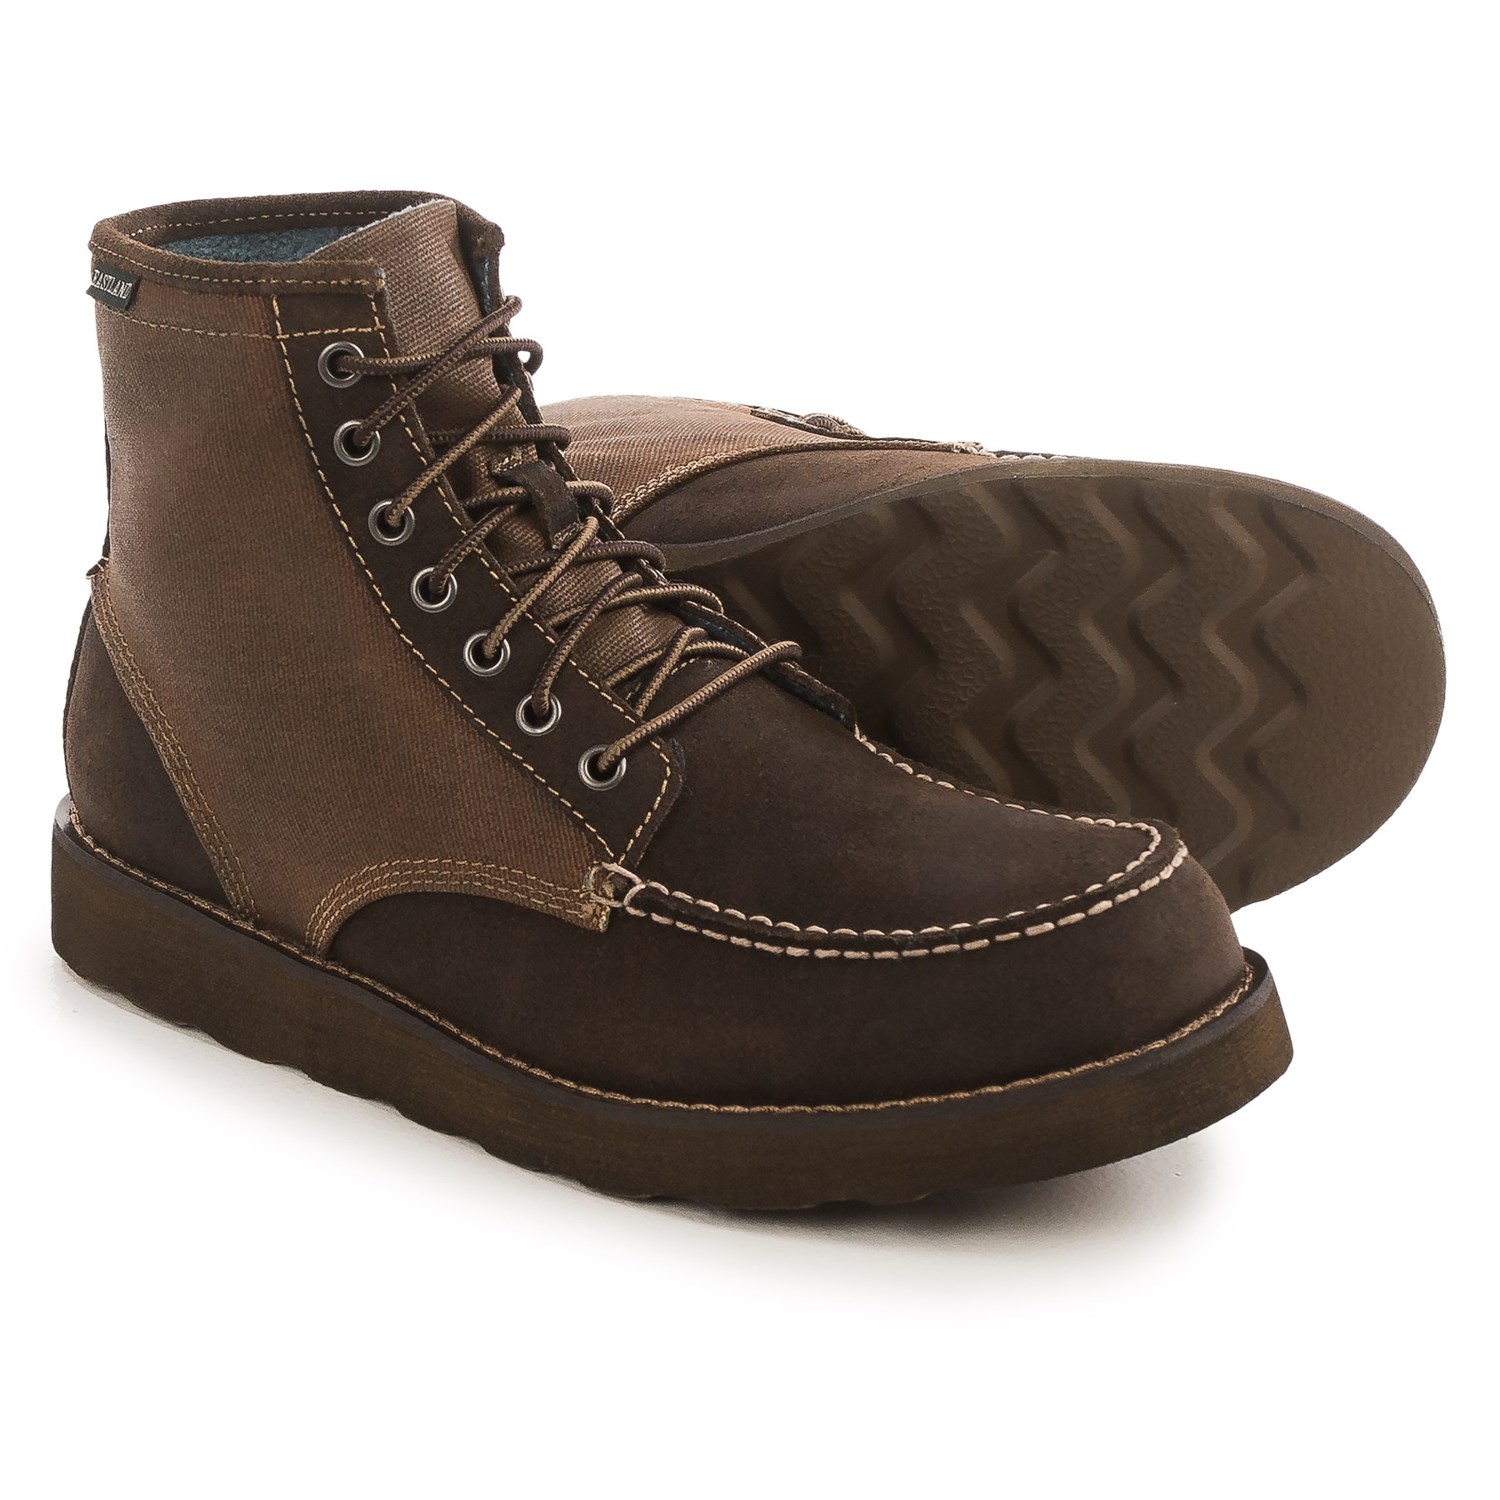 Eastland Lumber Up Moc-Toe Boots (For Men) - Save 80%